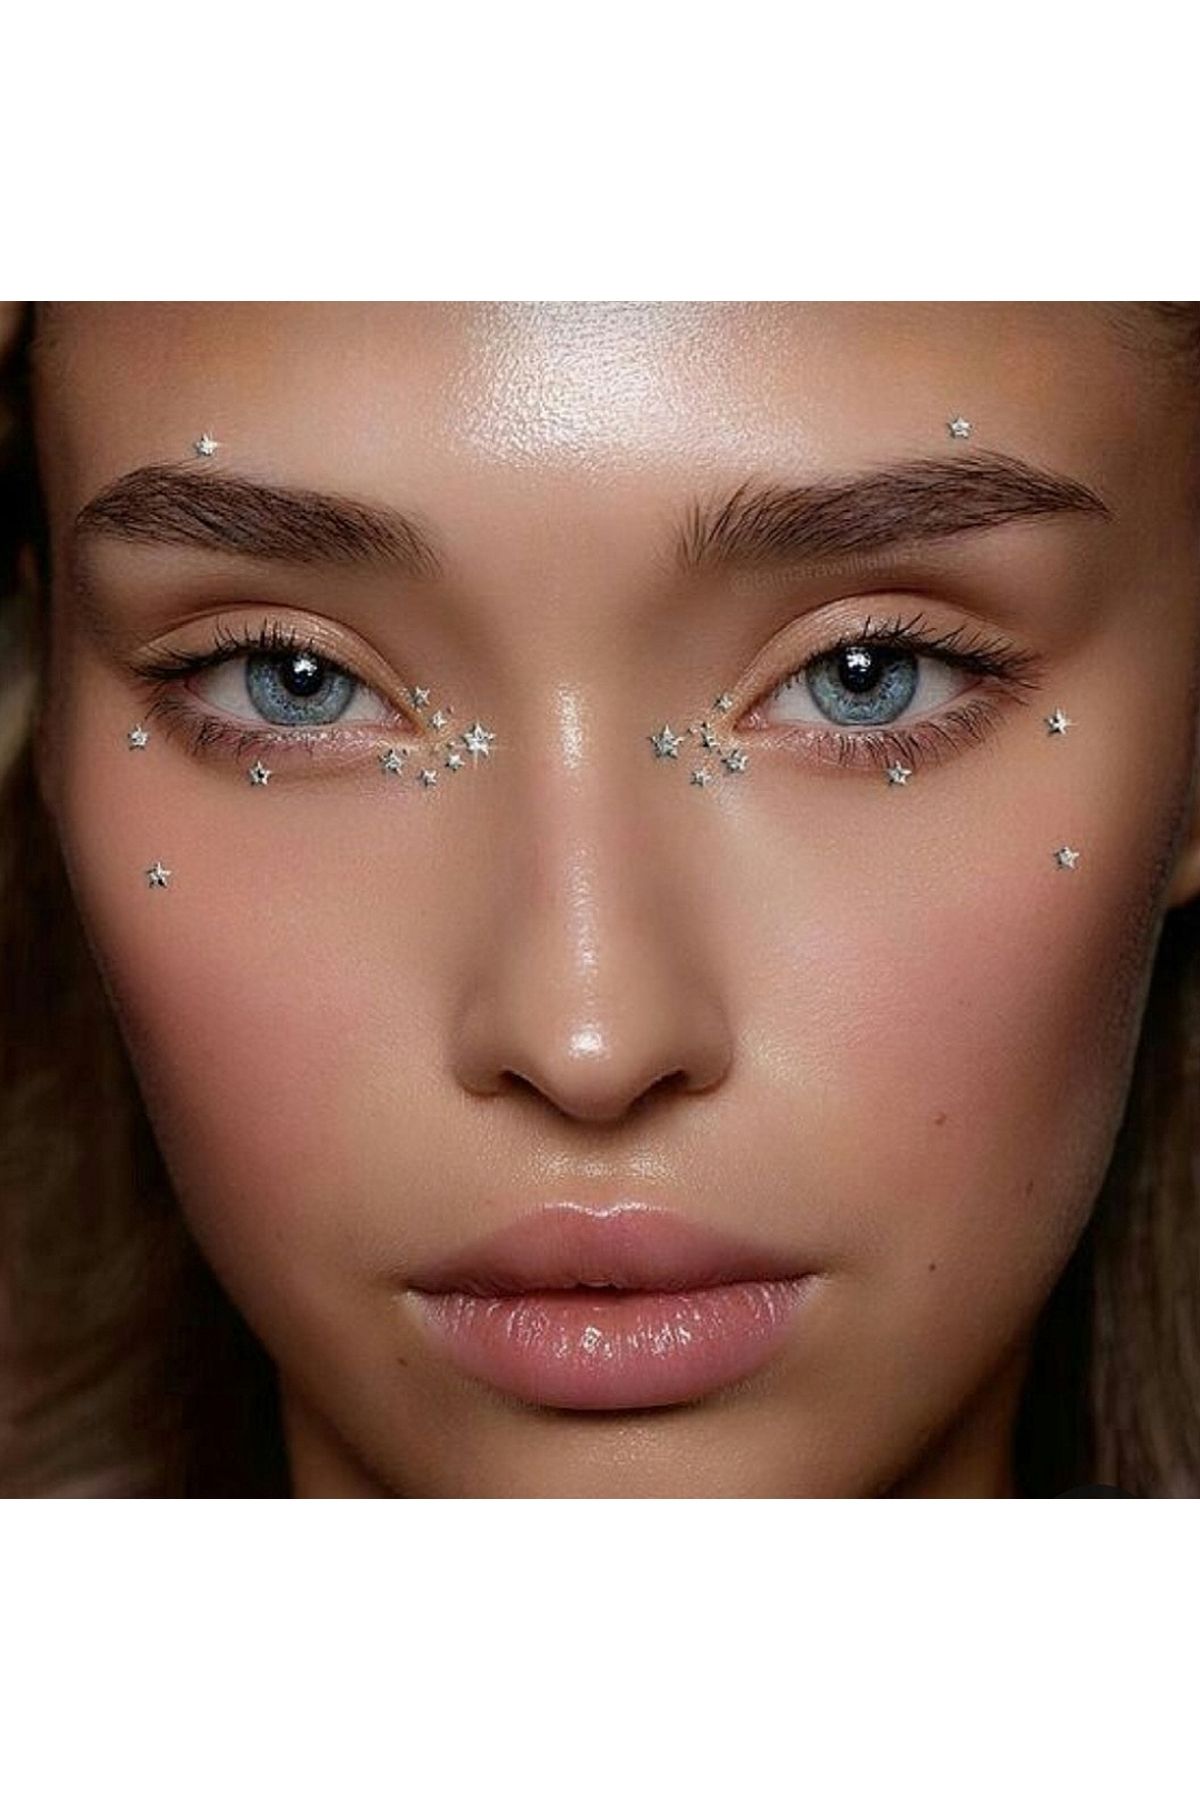 Heppii Kristal Yıldızlı Yüz Taşı Kendinden Yapışkanlı Makyaj Taşı Makeup Stickers Yıldız Tırnak Taşı